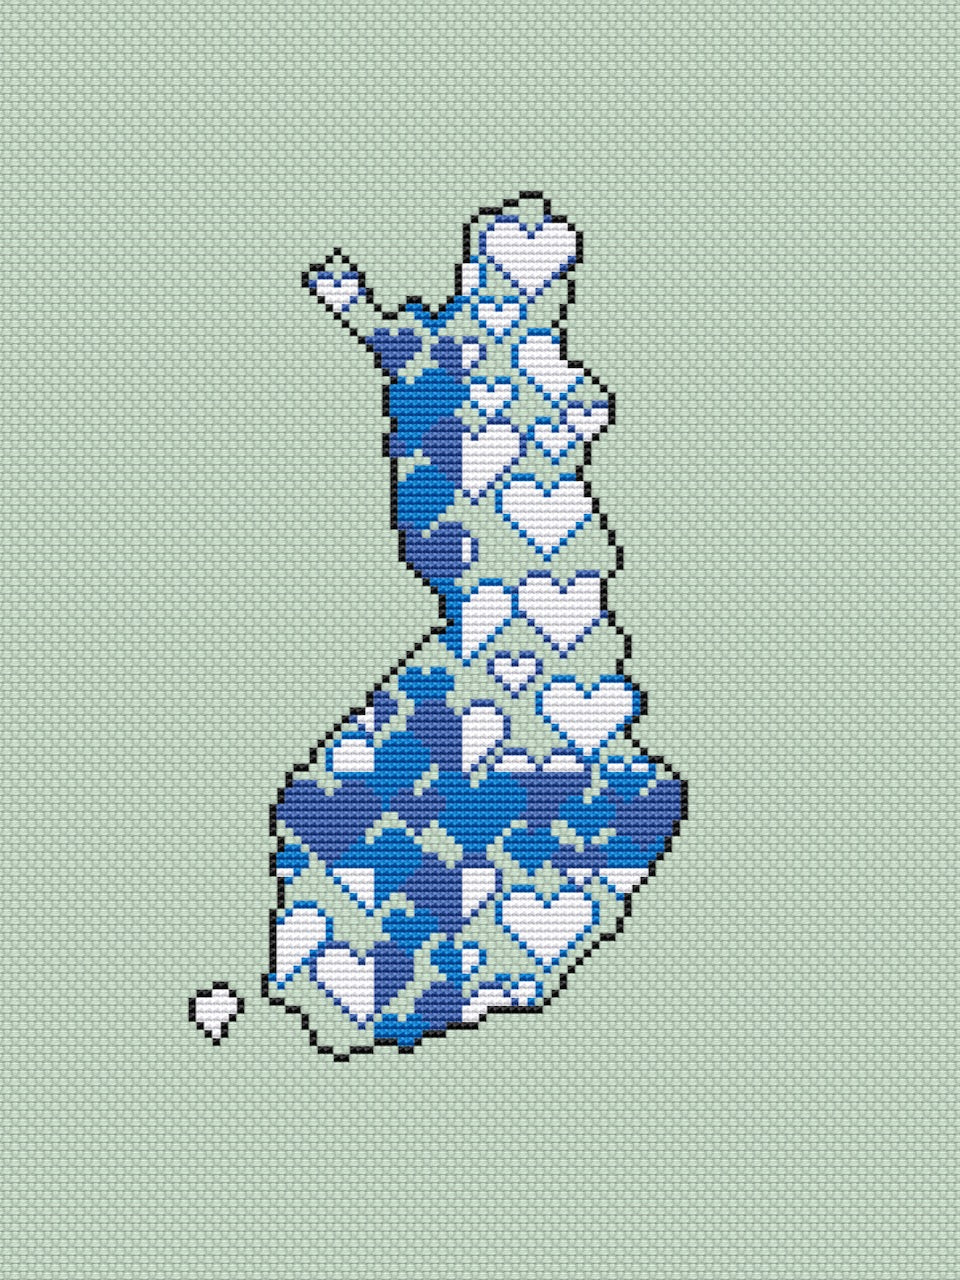 Finland cross stitch pattern-4